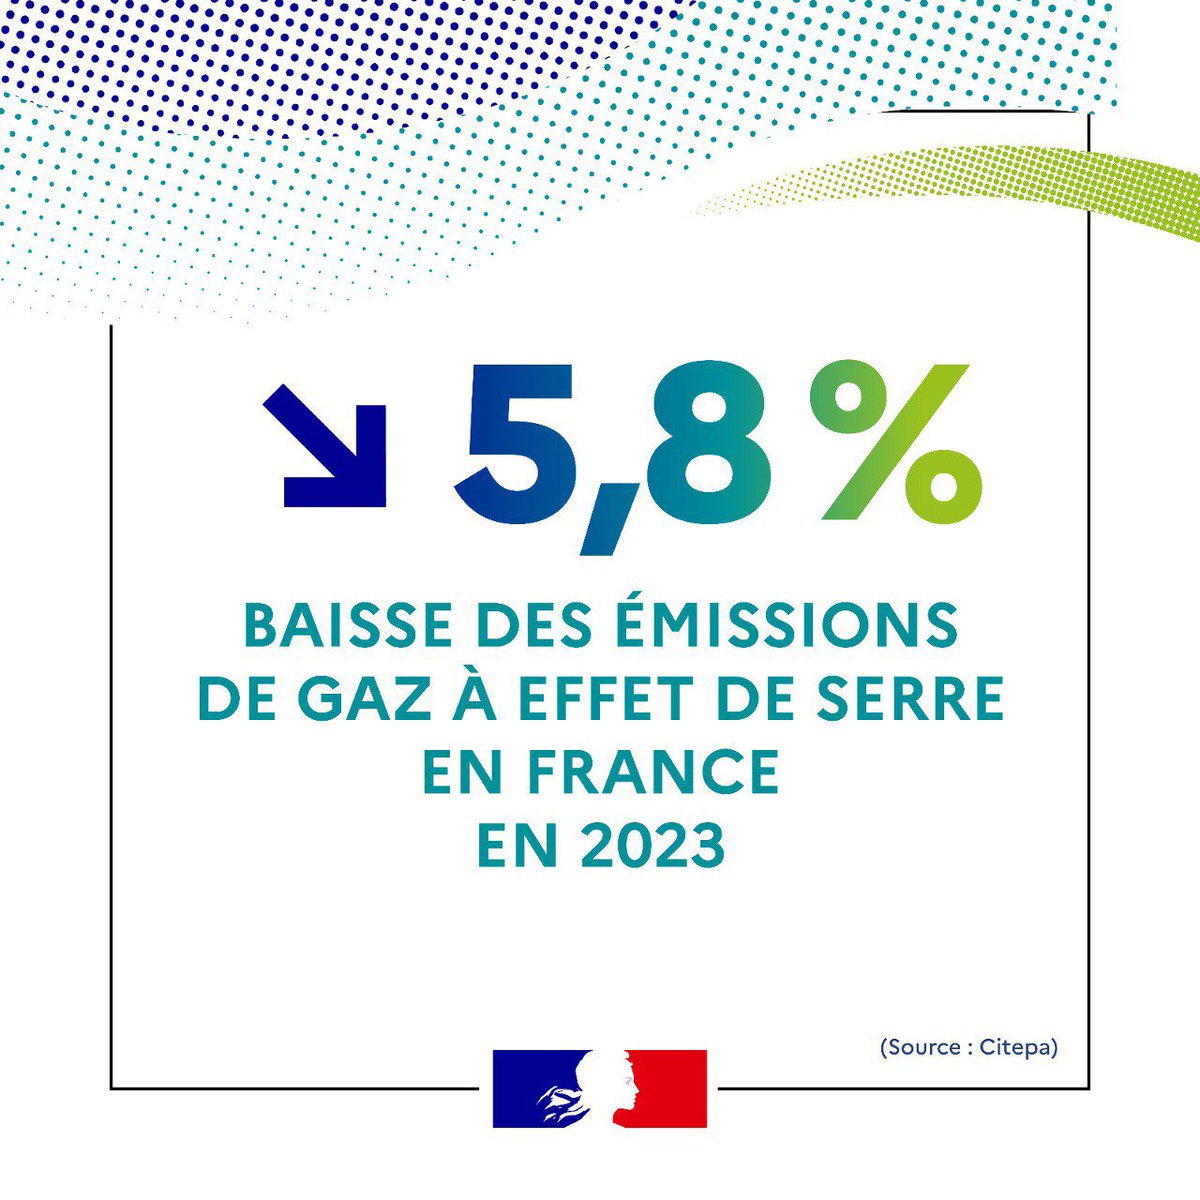 C’est un chiffre sans précédent ! Notre action paie : les émissions de gaz à effet de serre ont baissé de 5,8% en France en 2023.